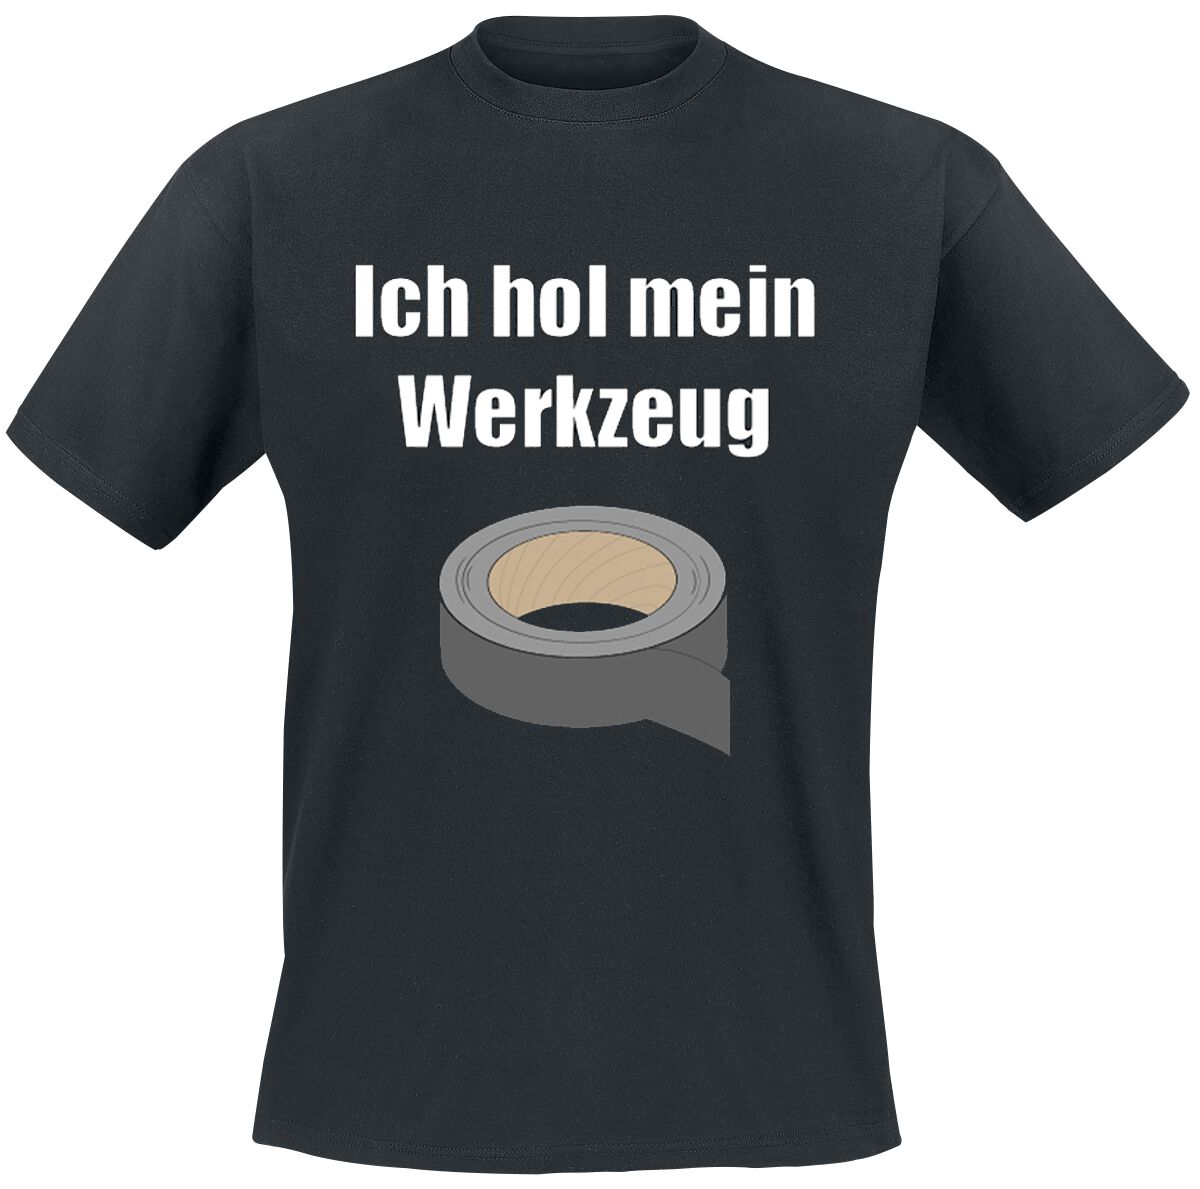 Beruf & Karriere T-Shirt - Ich hol mein Werkzeug - S bis 4XL - für Männer - Größe XXL - schwarz